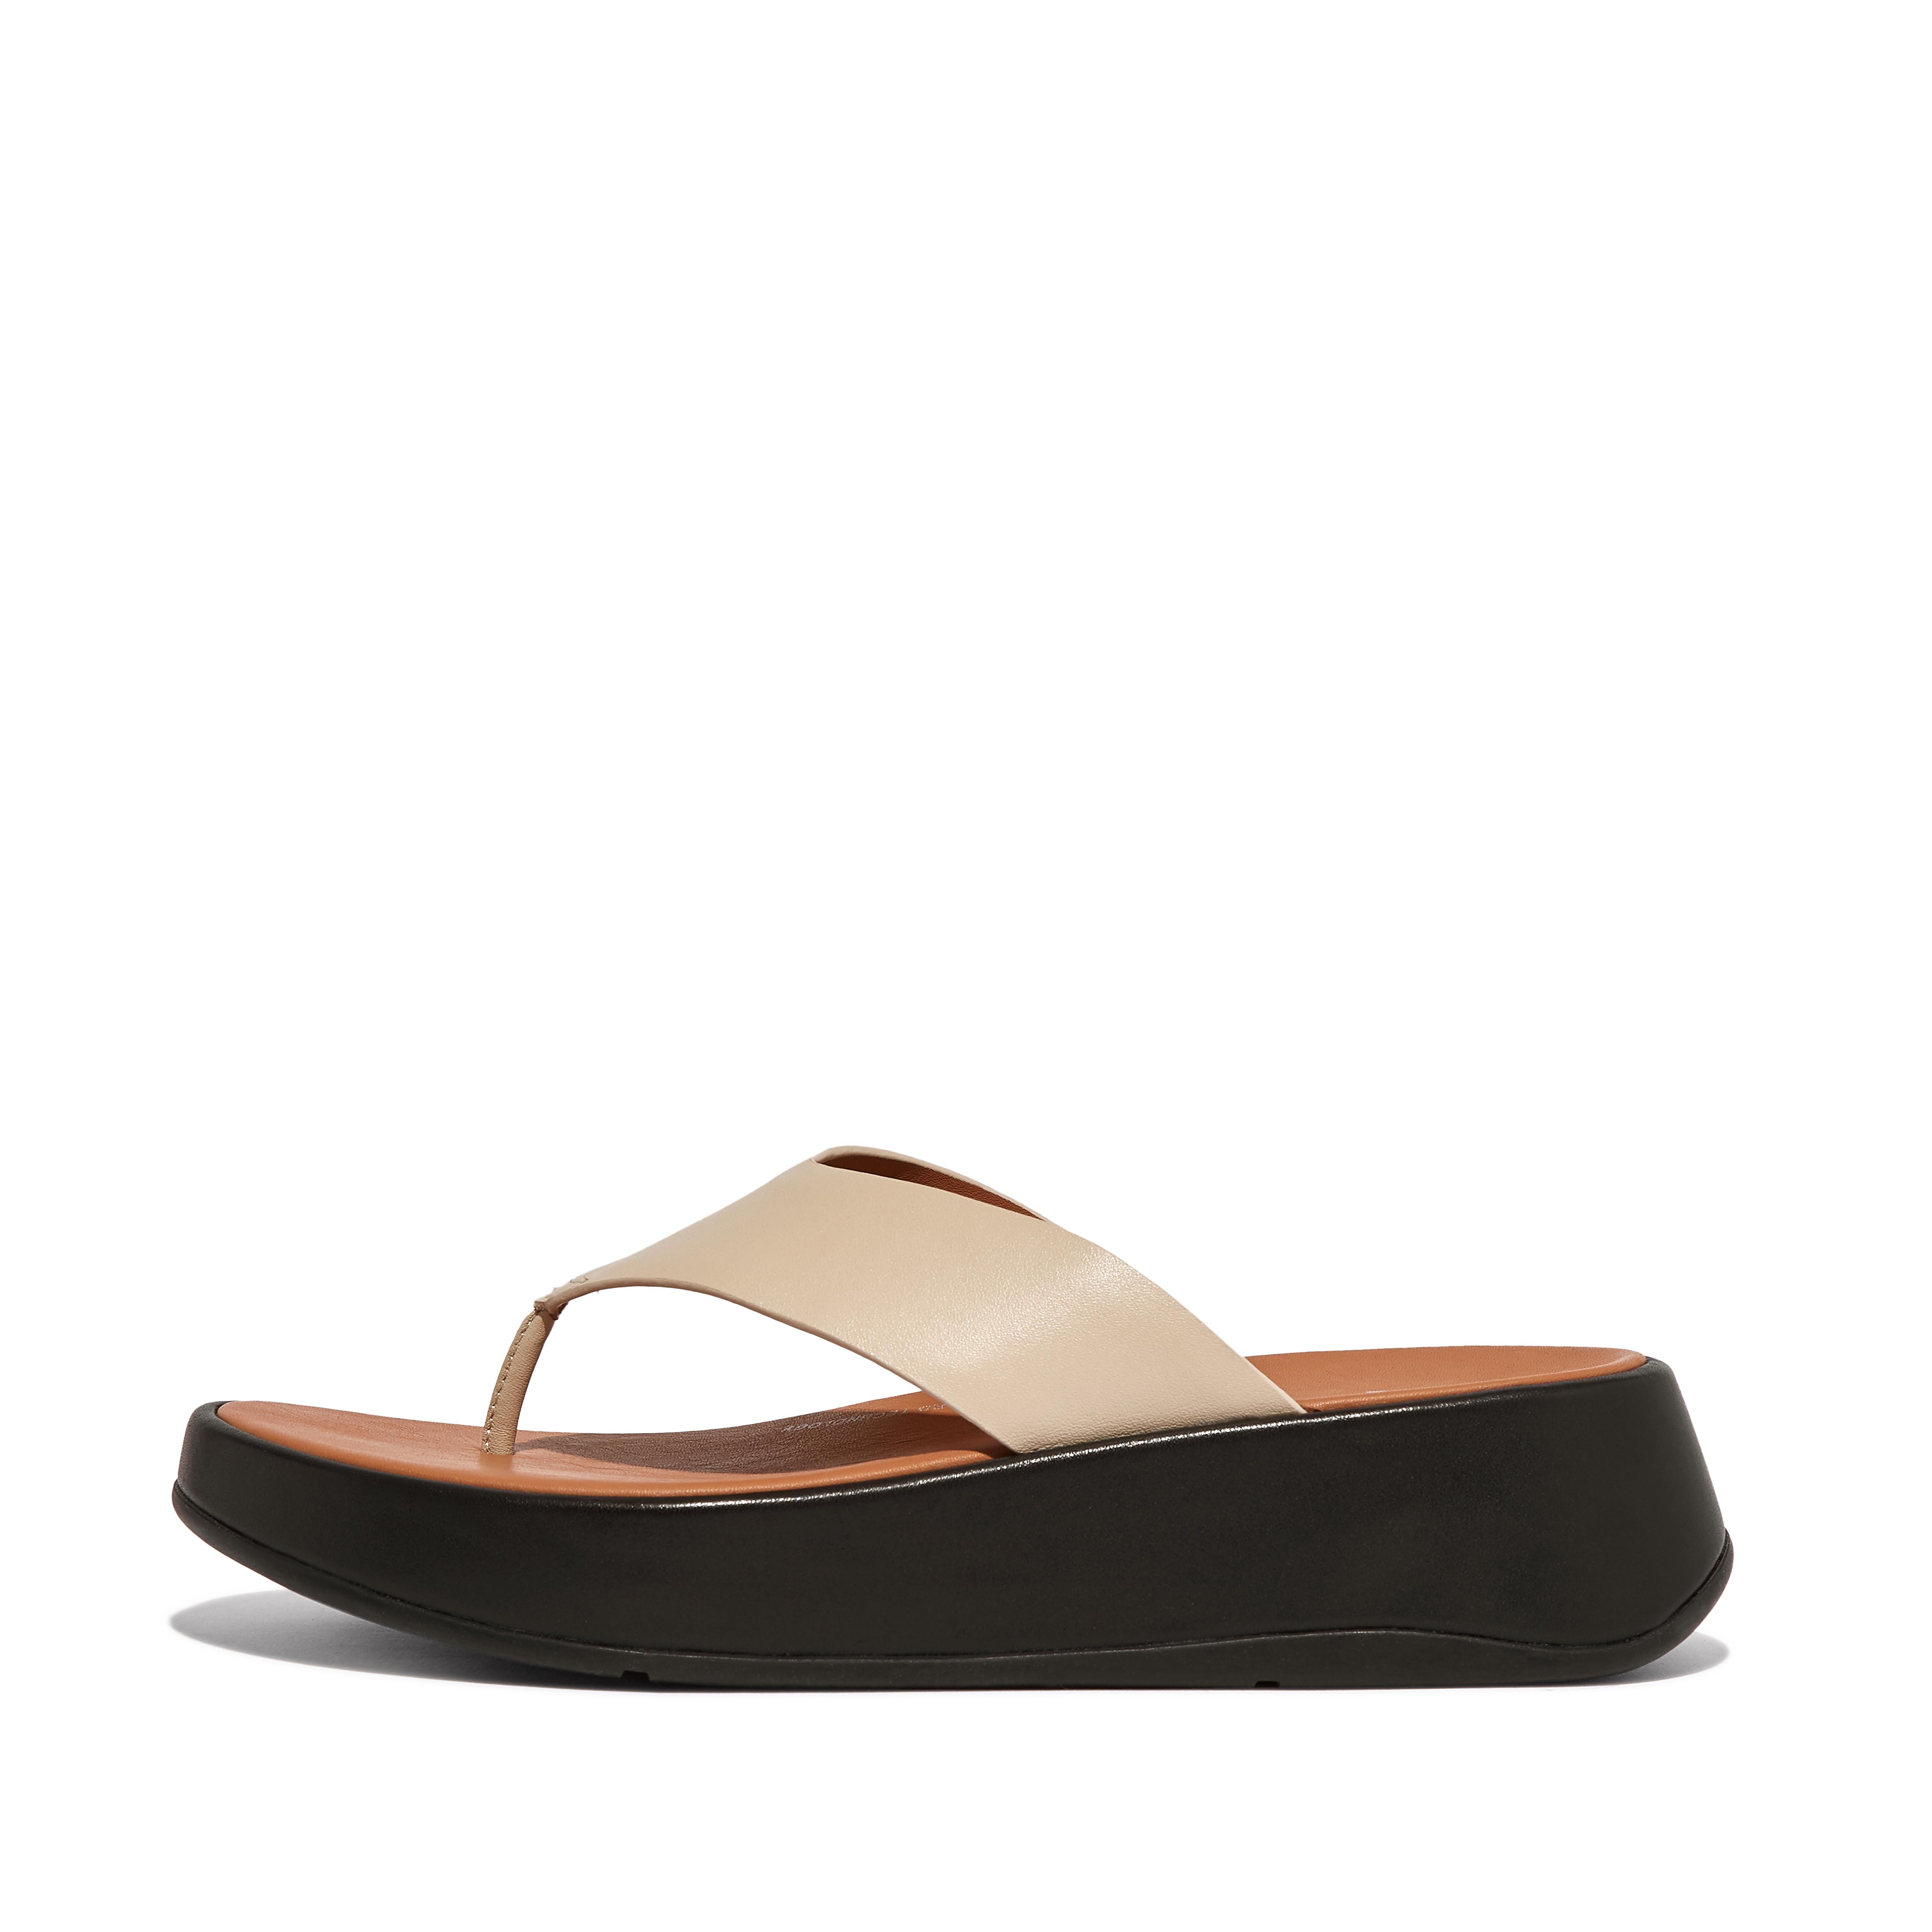 핏플랍 샌들 Fitflop Luxe Leather Flatform Toe-Post Sandals,Beige/Black